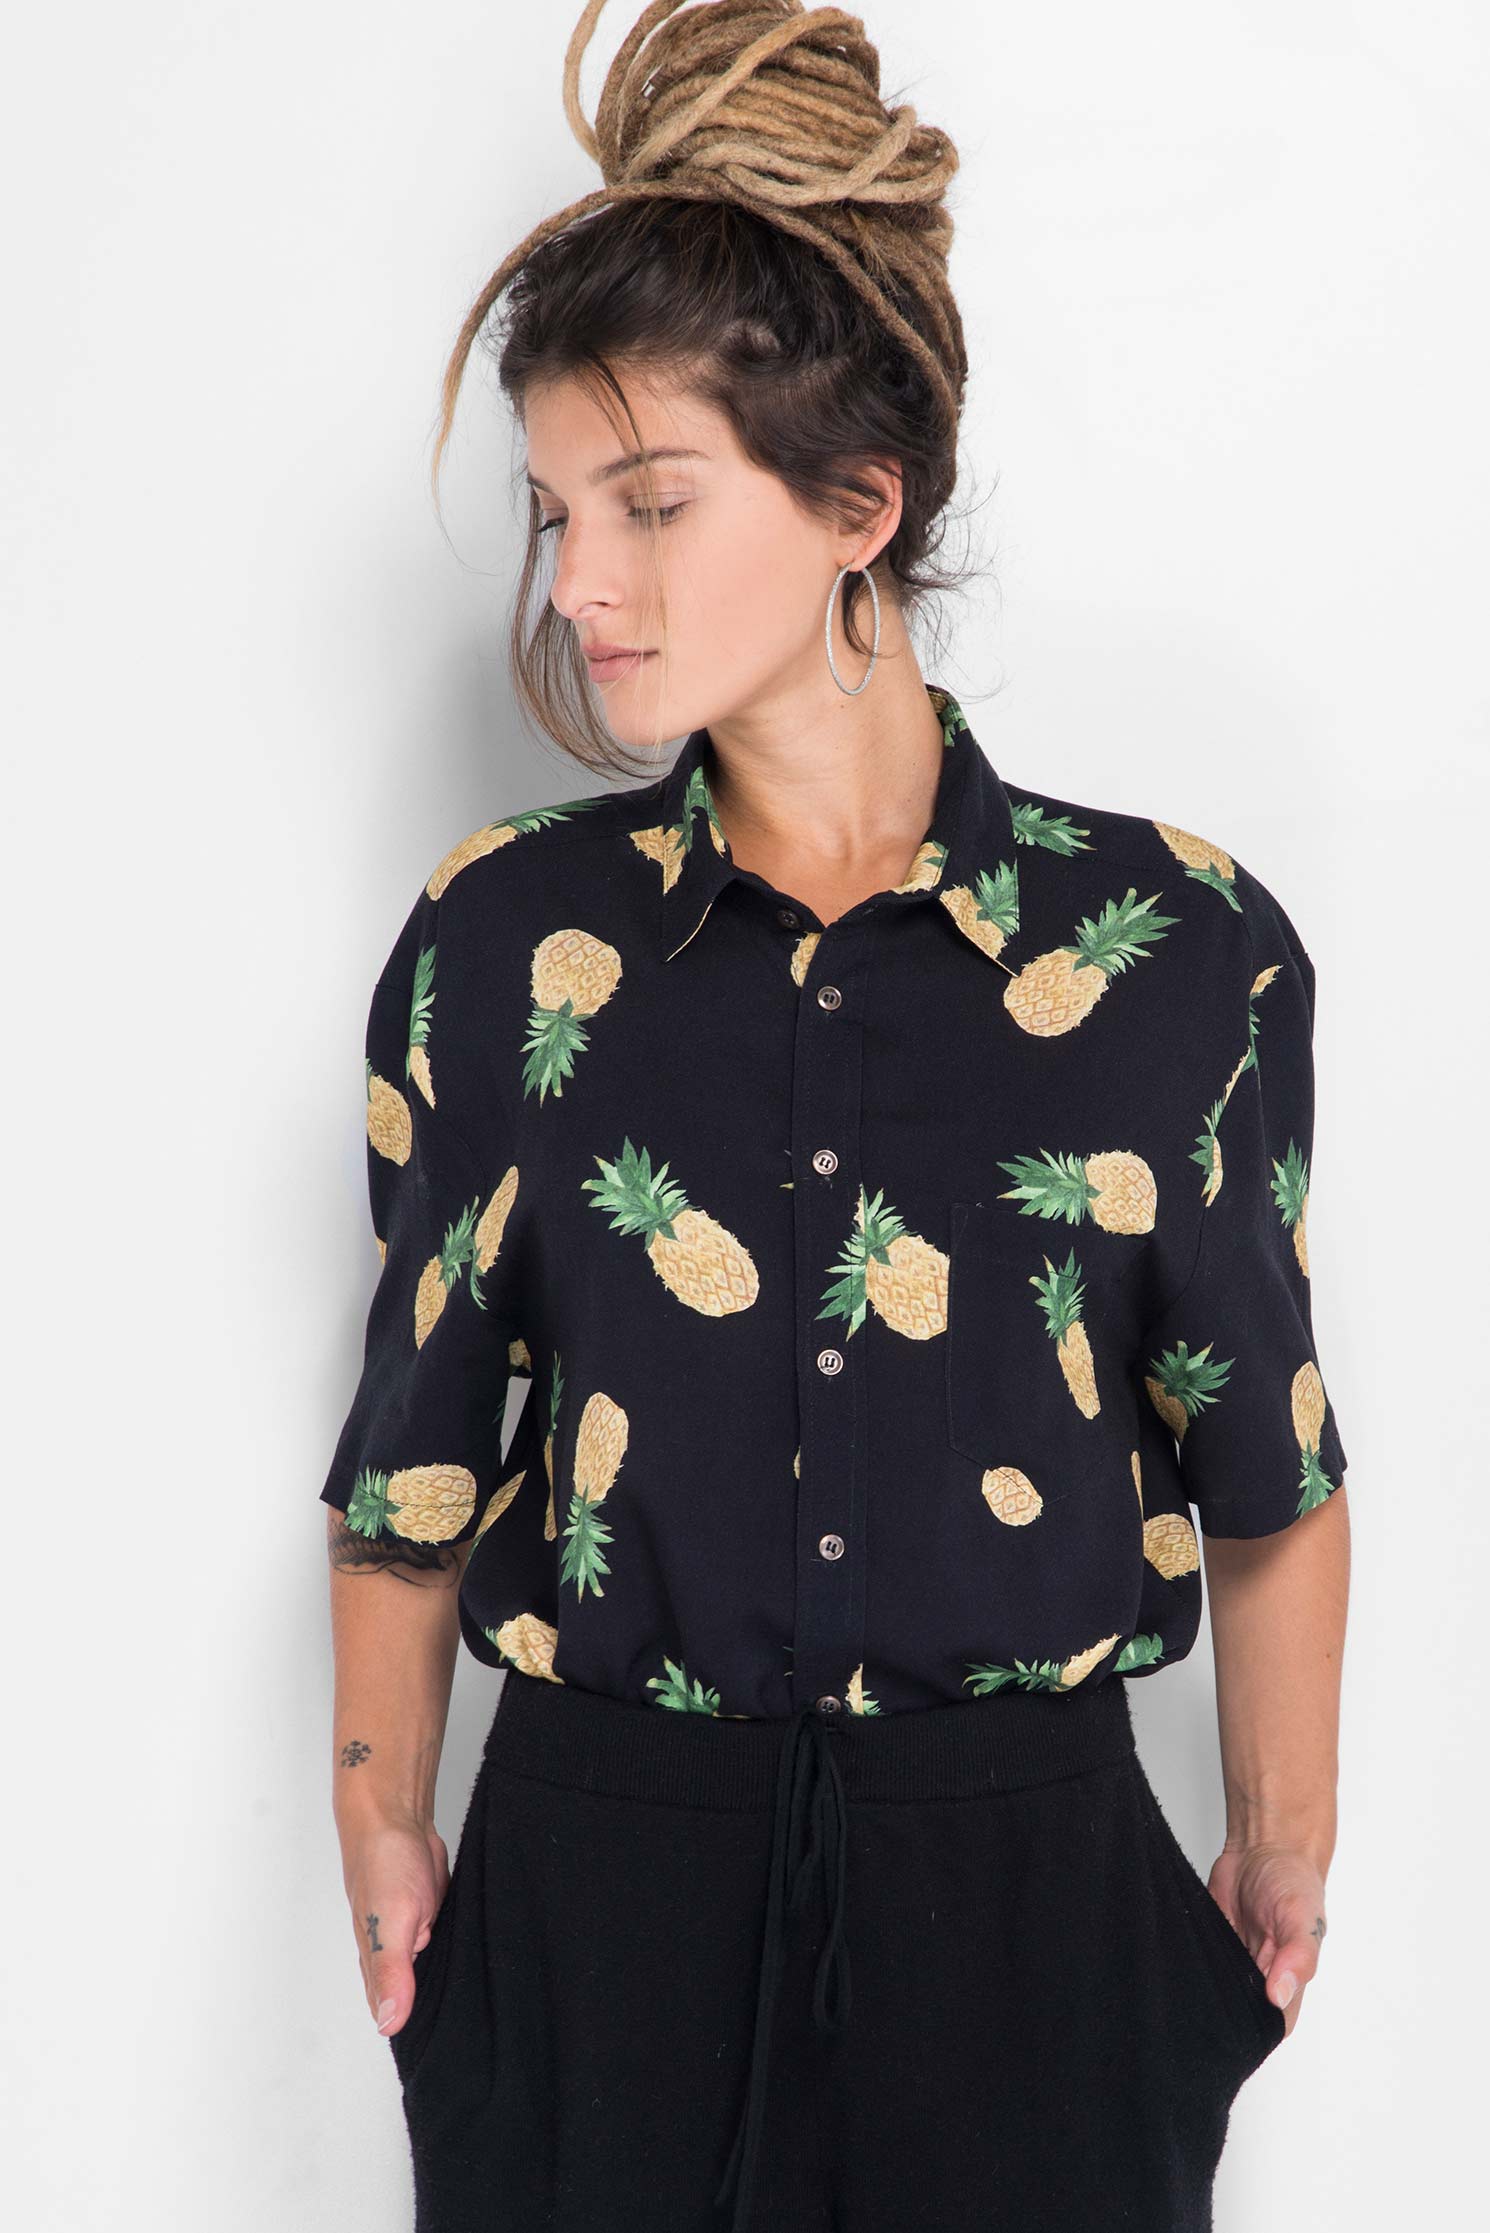 Camisa Pineapple Fever